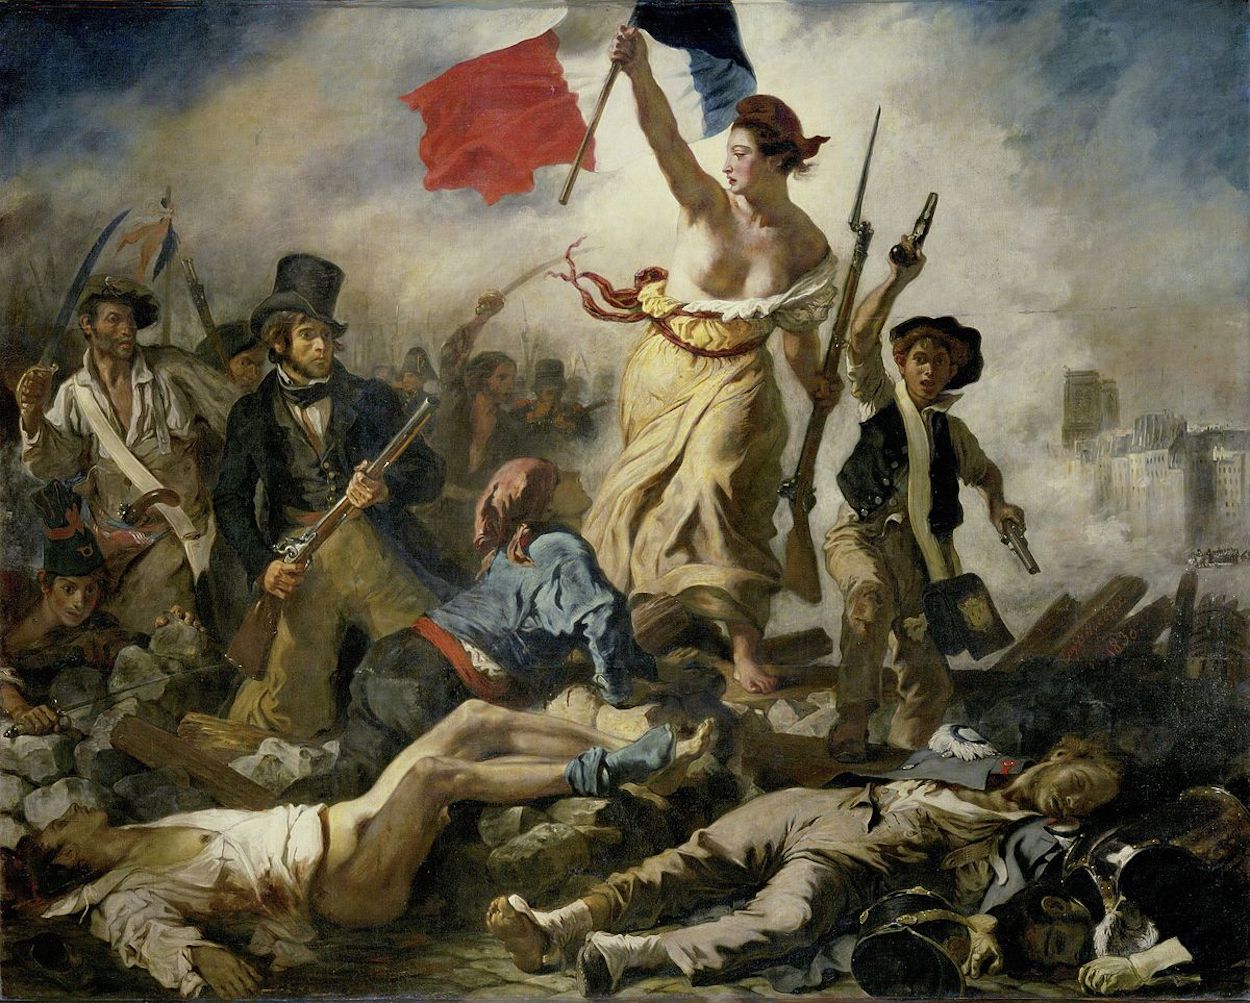 La Liberté guidant le peuple by Eugène Delacroix - 1830 - 260 cm x 325 cm Musée du Louvre